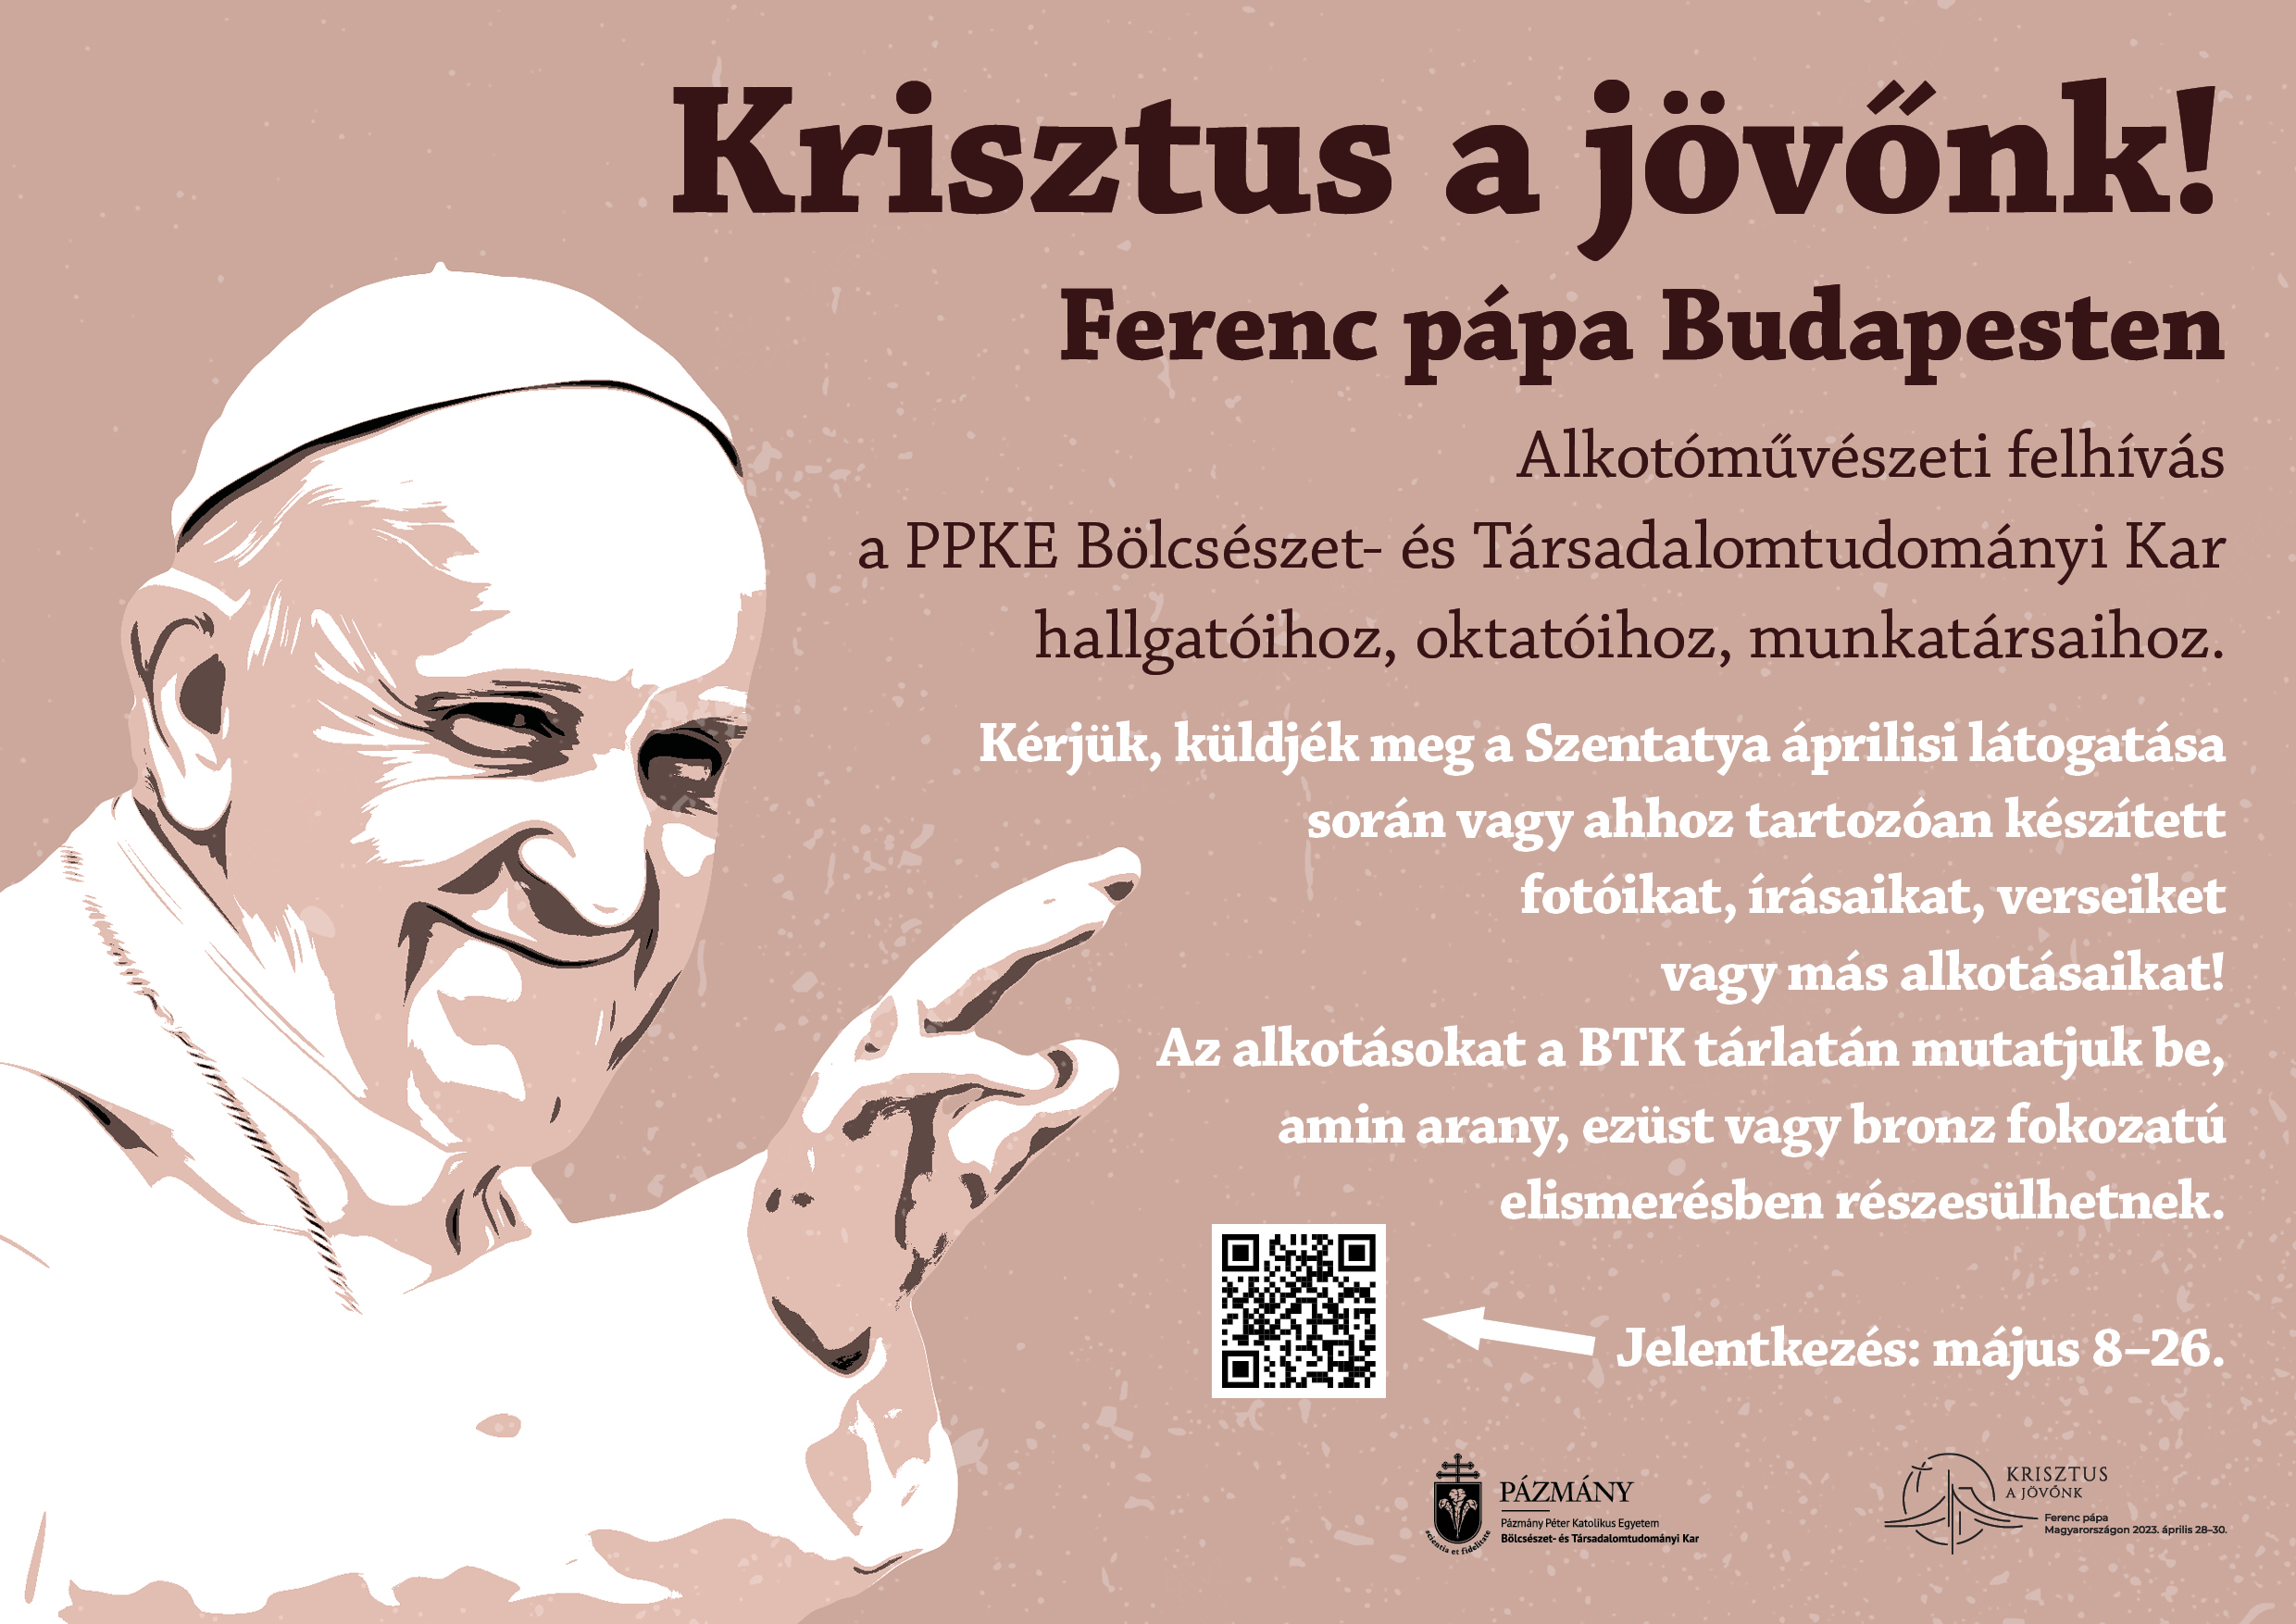 Krisztus a jövőnk! – Ferenc pápa Budapesten